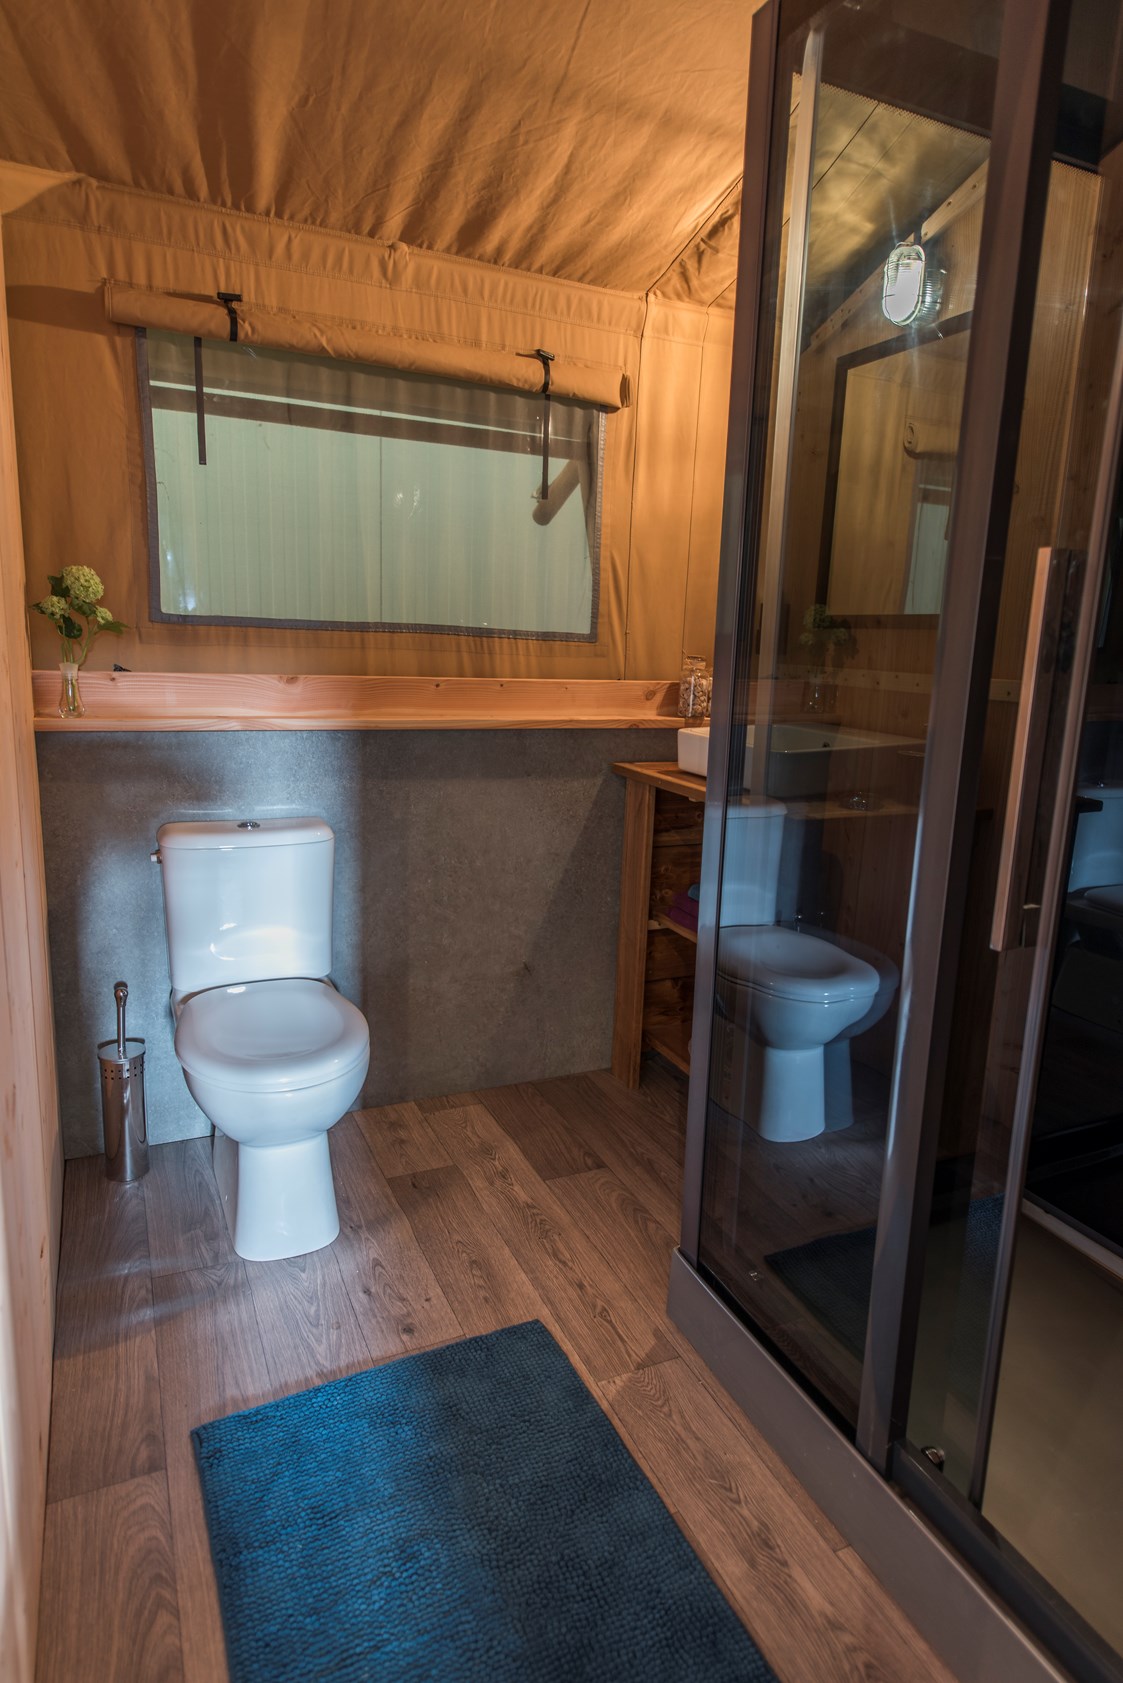 Glampingunterkunft: Die Badezimmer der Safarizelte sind geräumig und mit Dusche, Waschbecken und WC ausgestattet.  - Campingpark Heidewald